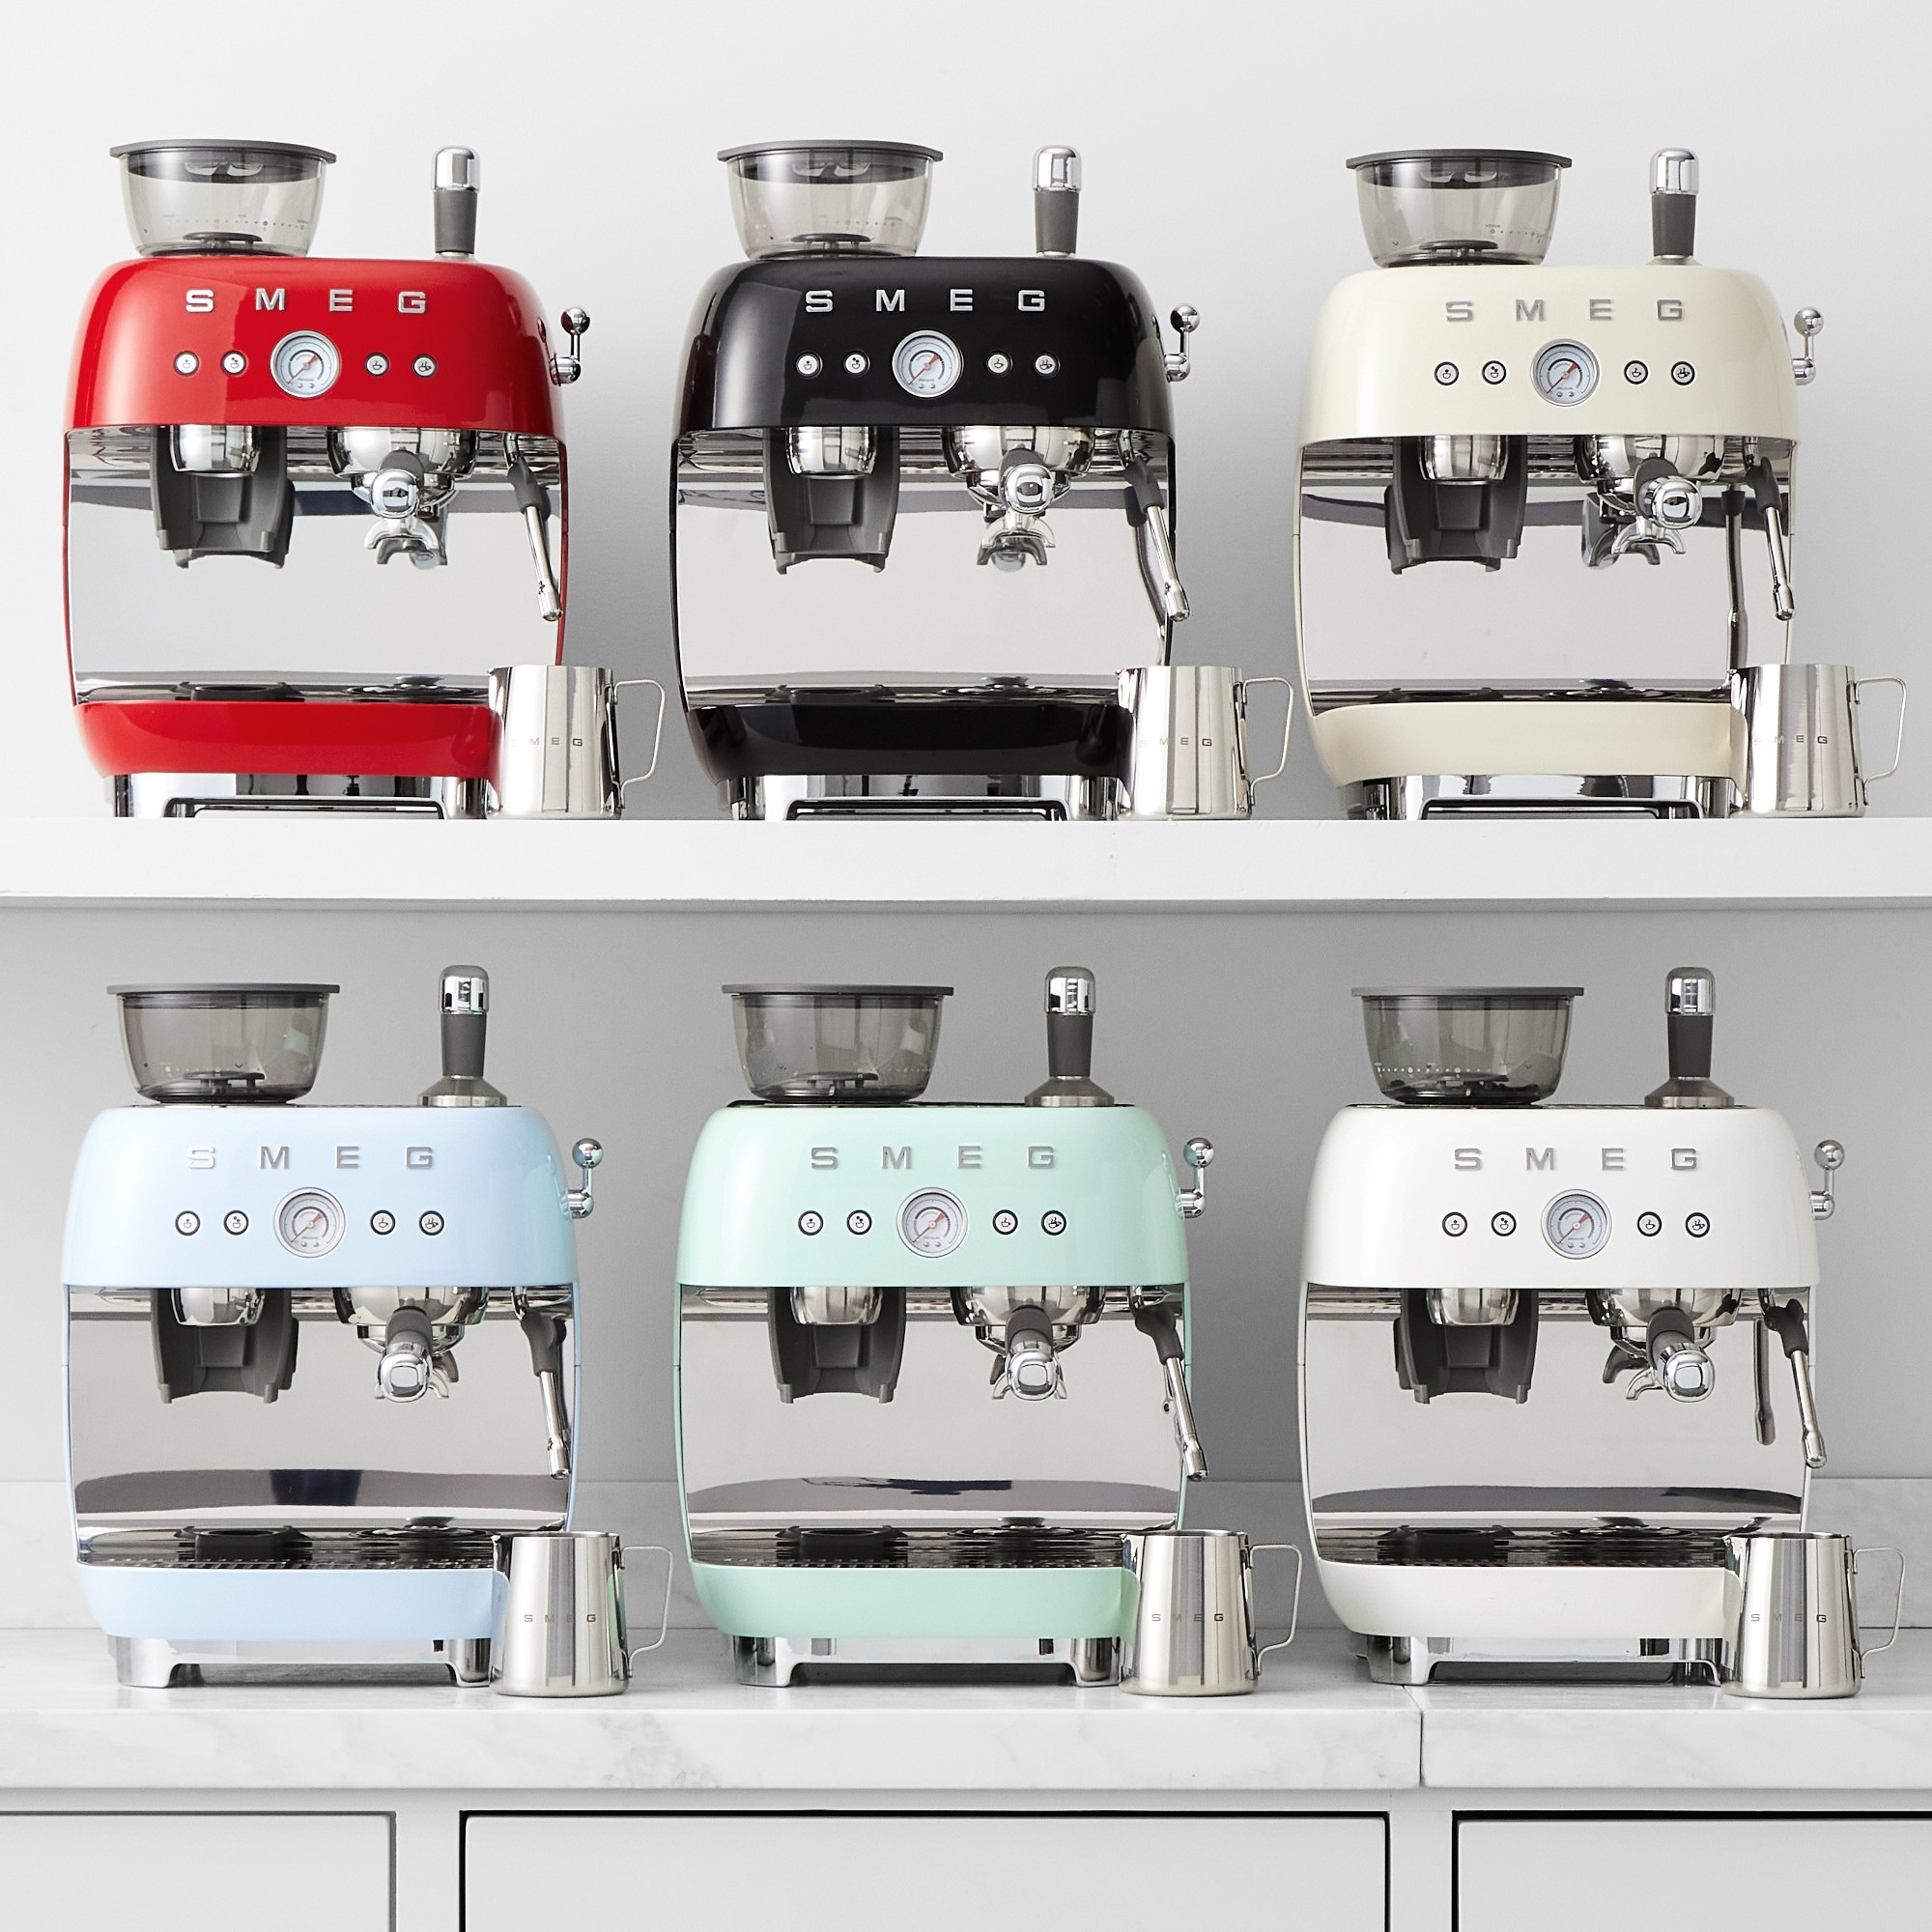 SMEG Semi-Automatic Espresso Machines in all colors